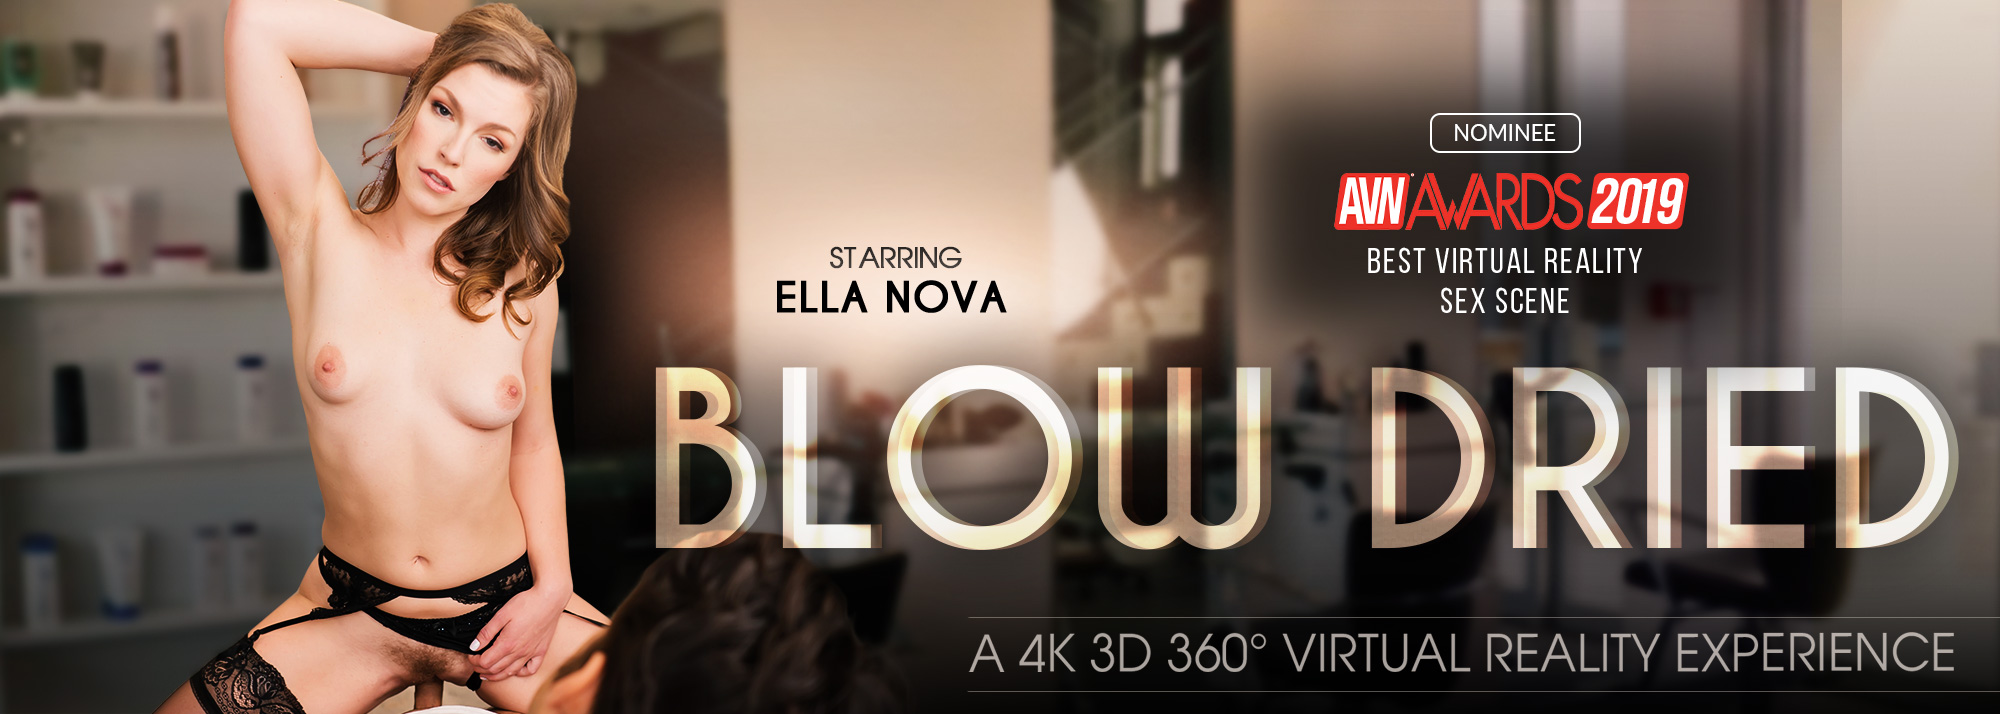 Blow Dried - VR Porn Video, Starring: Ella Nova